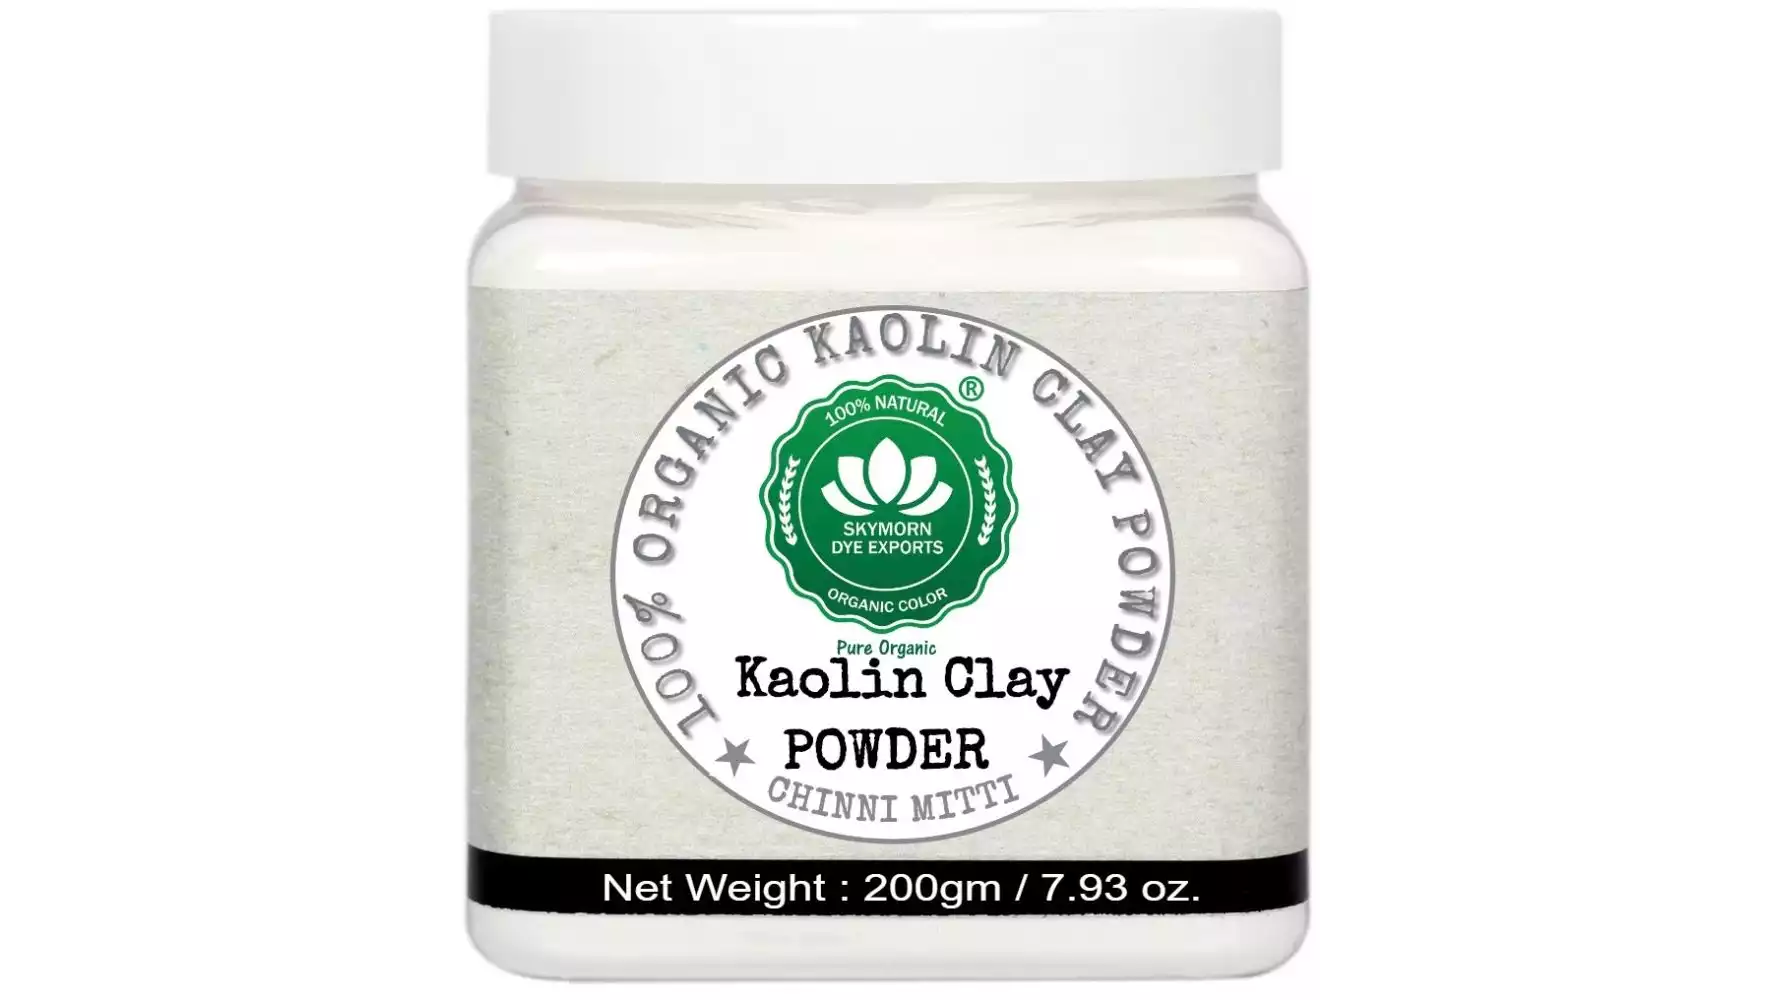 SkyMorn Pure Organic 100% Natural Kaolin Clay Powder (200g)